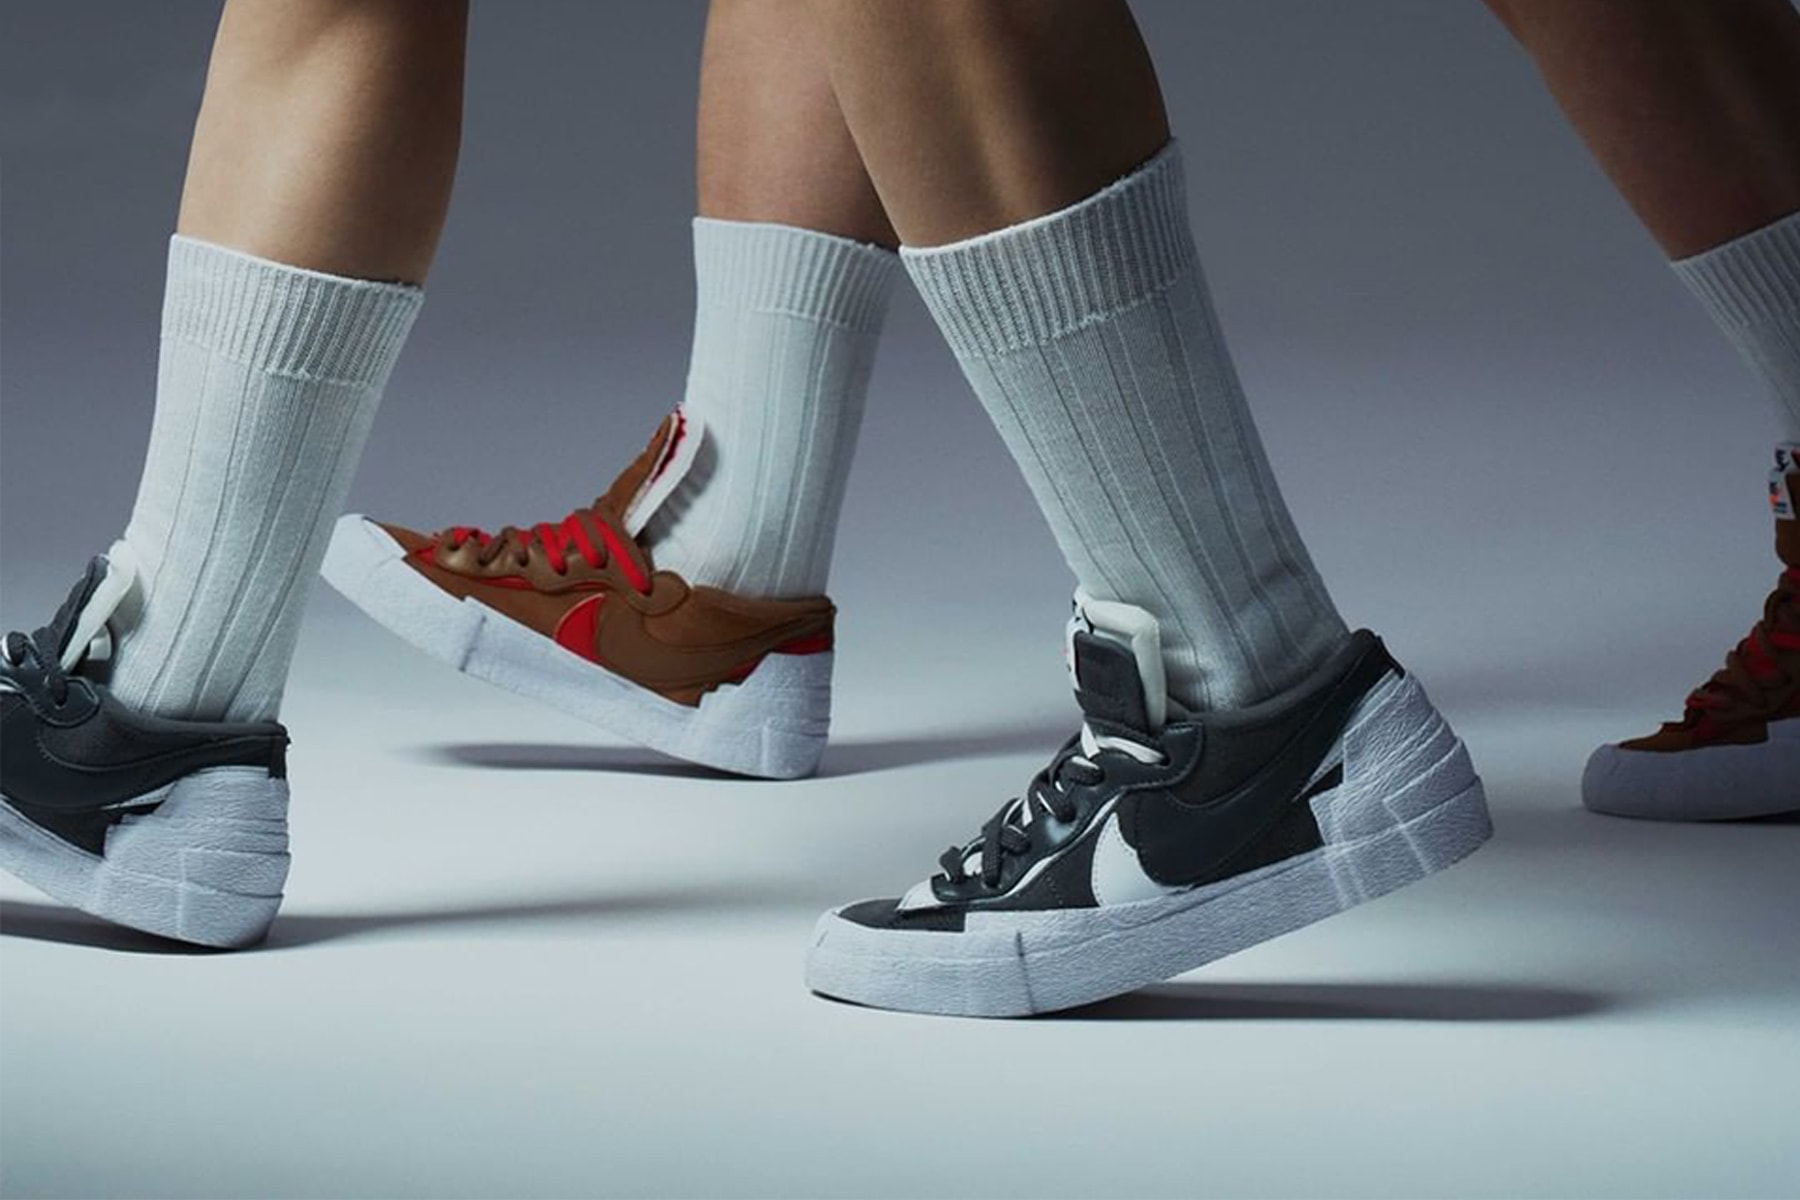 sacai 正式公佈 Nike Blazer Low「British Tan」、「Iron Grey」官方發售情報